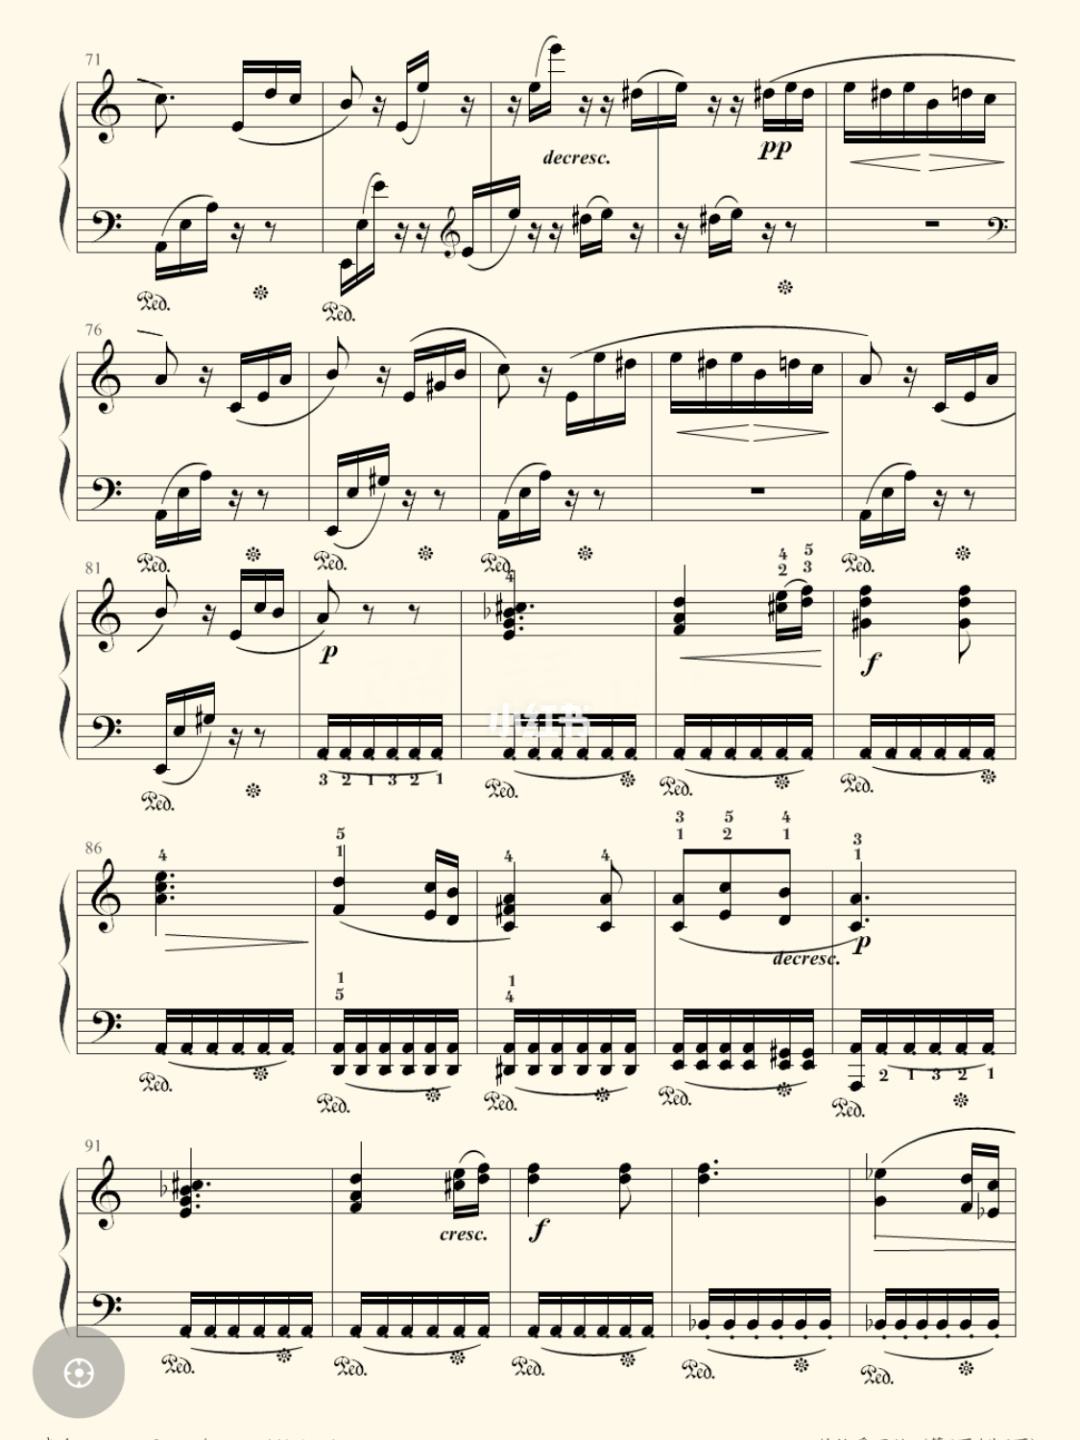 理查德克莱德曼钢琴曲献给爱丽丝sv(理查德克莱德曼钢琴曲献给爱丽丝的曲谱子)